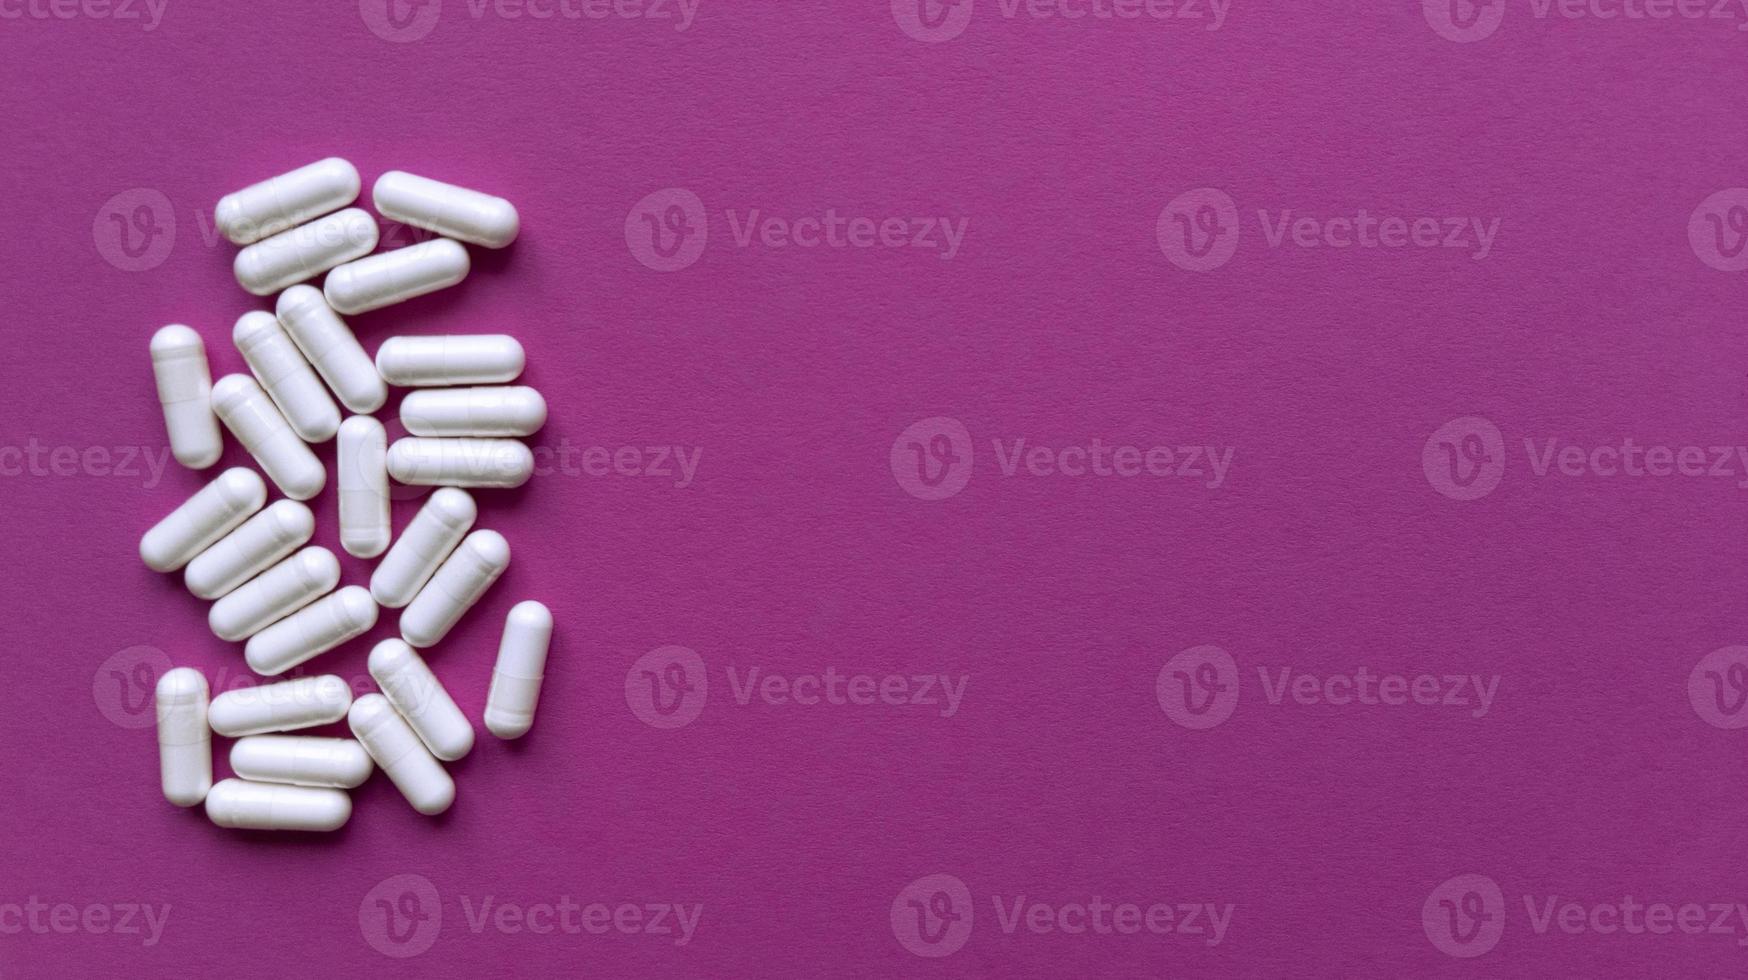 Pillole bianche su sfondo rosa semplice piatto laici con texture pastello e copia spazio concetto medico stock foto